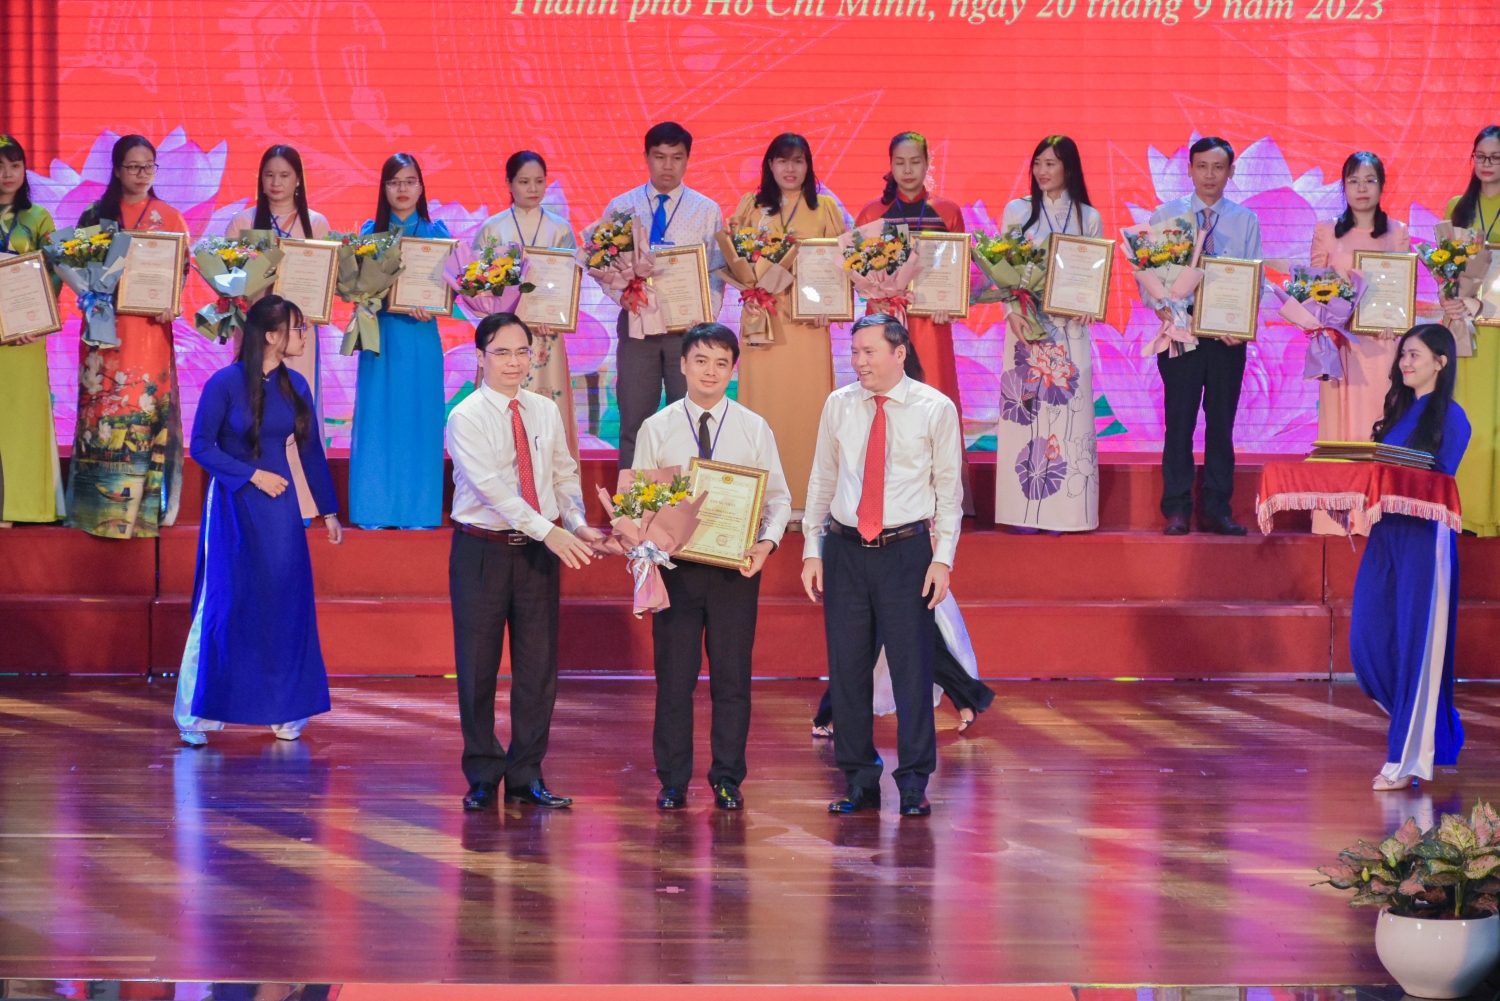 Đồng chí Nông Văn Dũng nhận danh hiệu "Giảng viên dạy giỏi" tại Hội thi giảng viên dạy giỏi toàn quốc các trường chính trị tỉnh, thành phố trực thuộc Trung ương lần thứ VIII - Năm 2023.